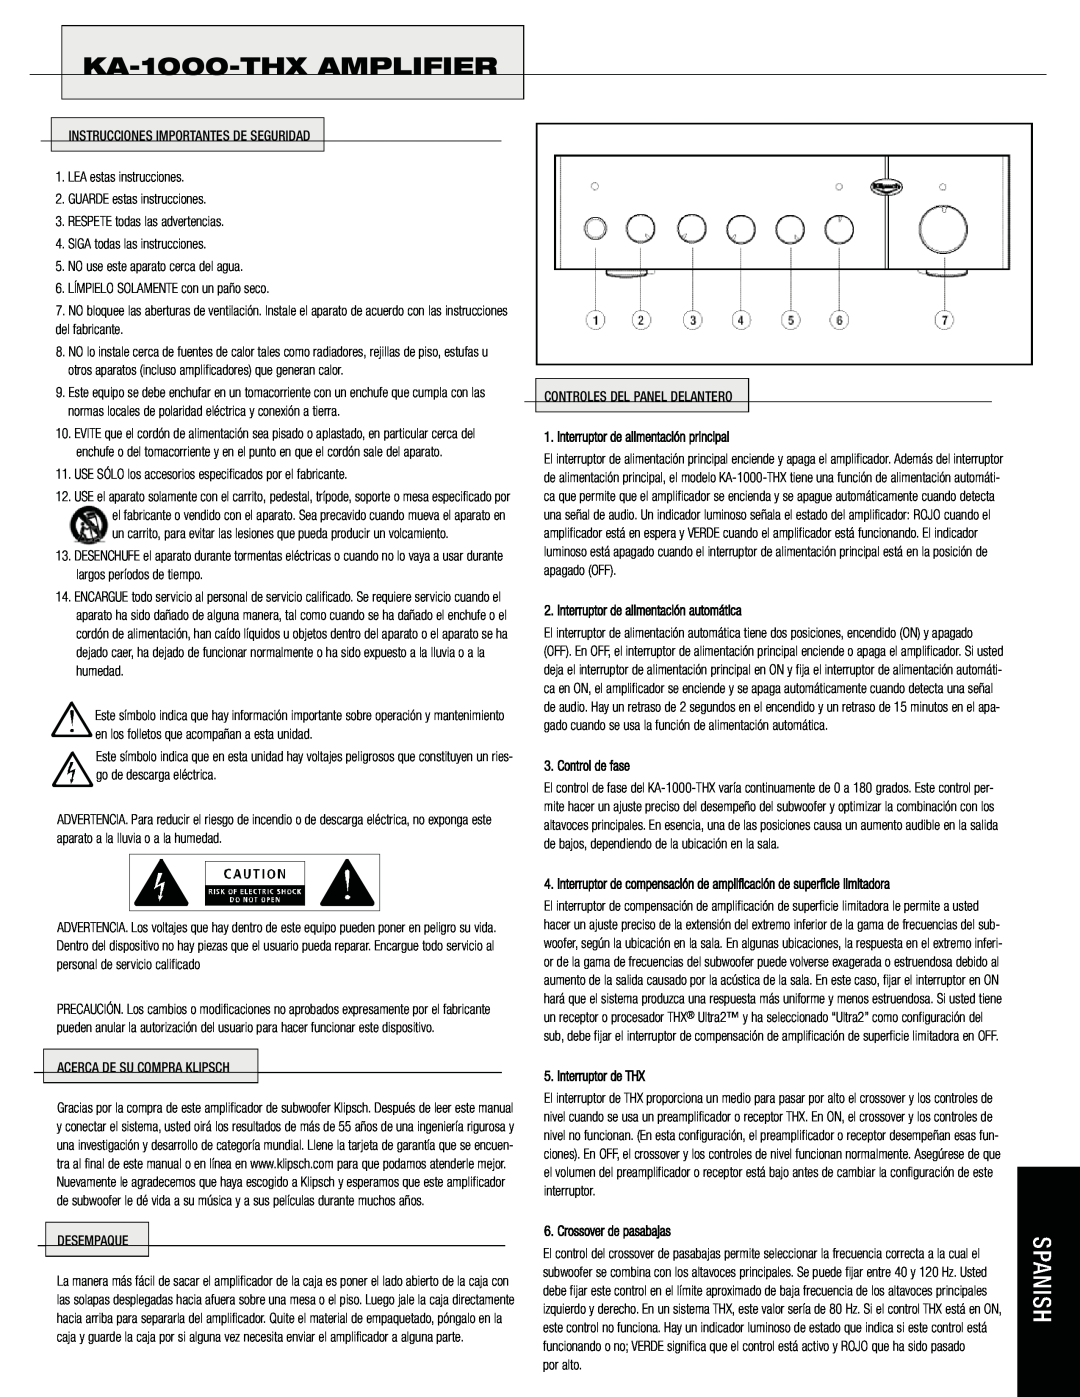 Klipsch owner manual KA-1000-THXAMPLIFIER, Interruptor de alimentación principal, Interruptor de alimentación automática 